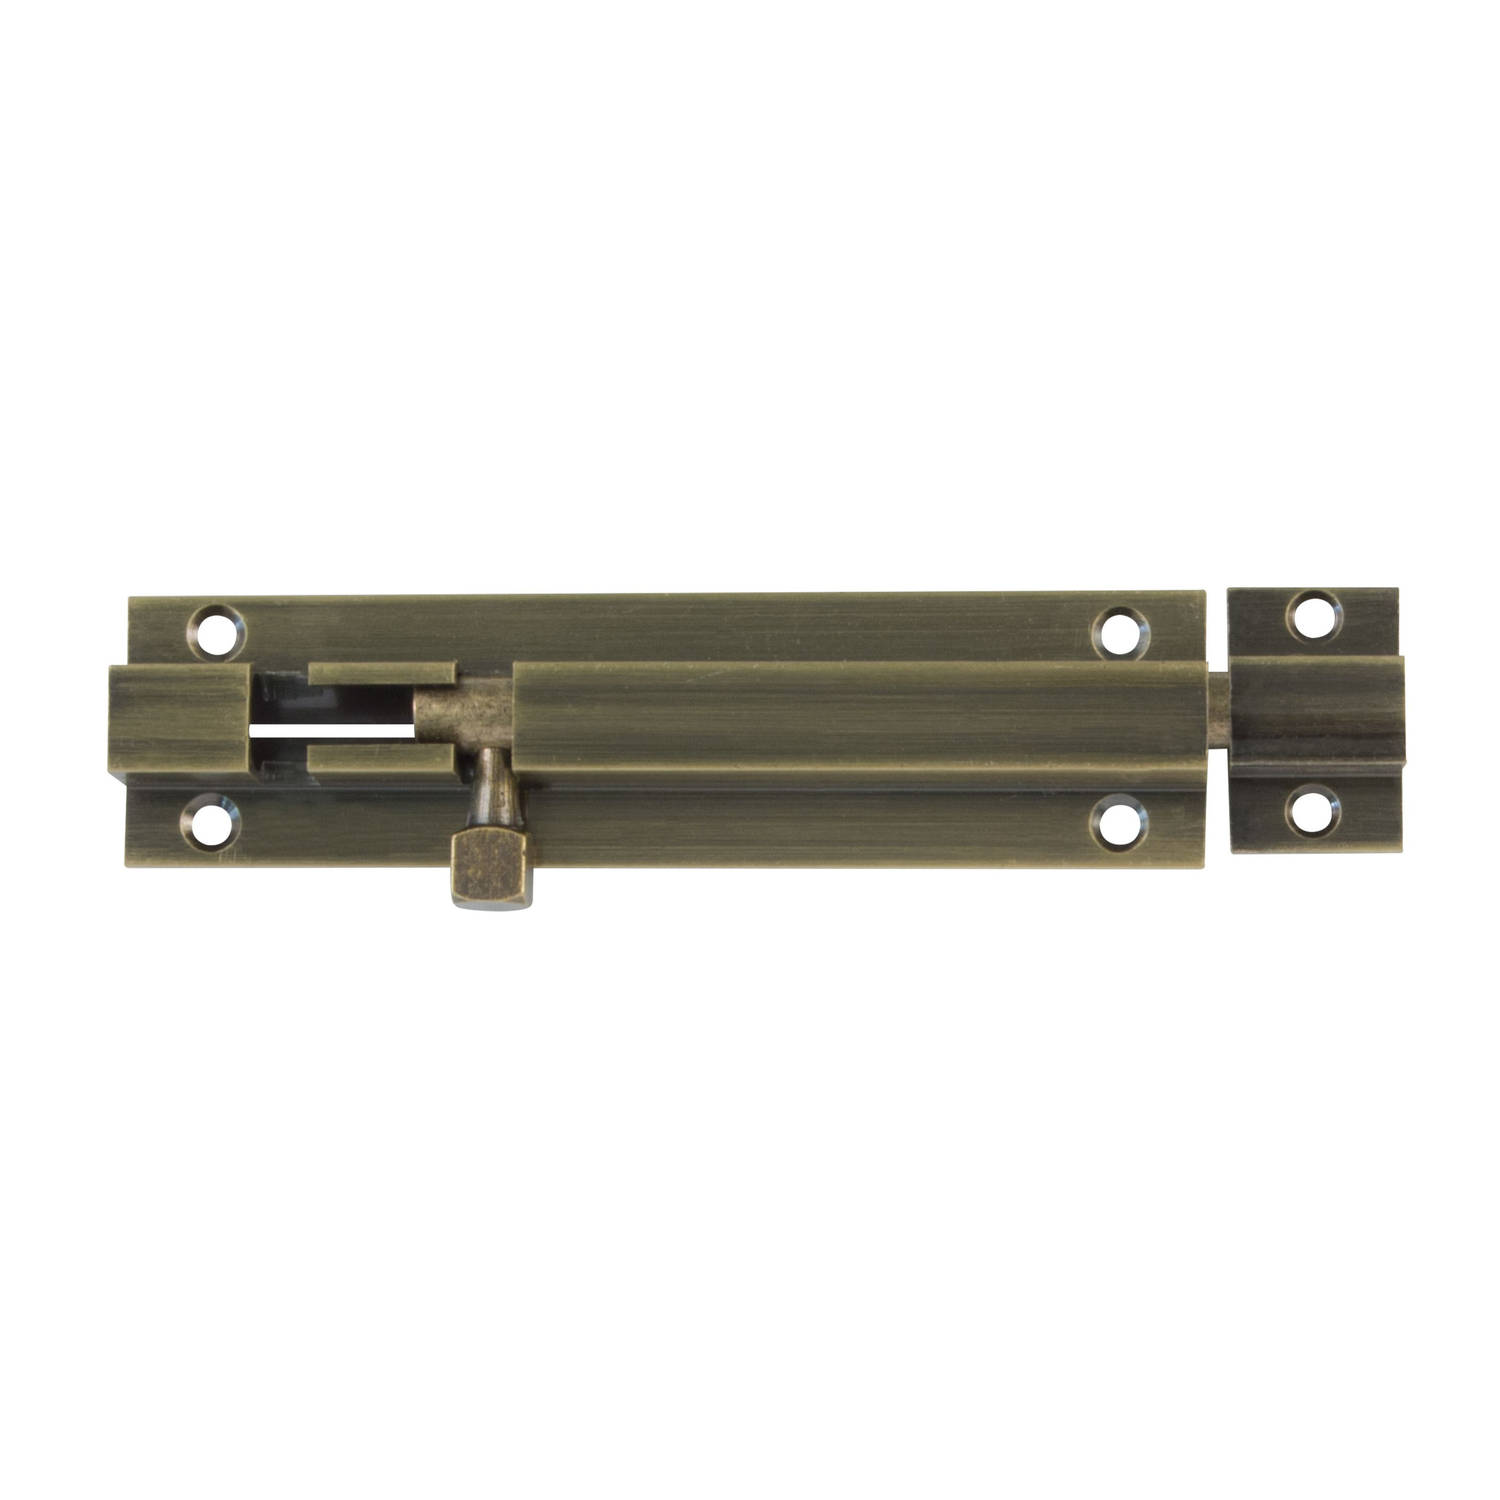 AMIG schuifslot/plaatgrendel - messing - 6 x 2.55 cm - brons - antiek look - deur - poort